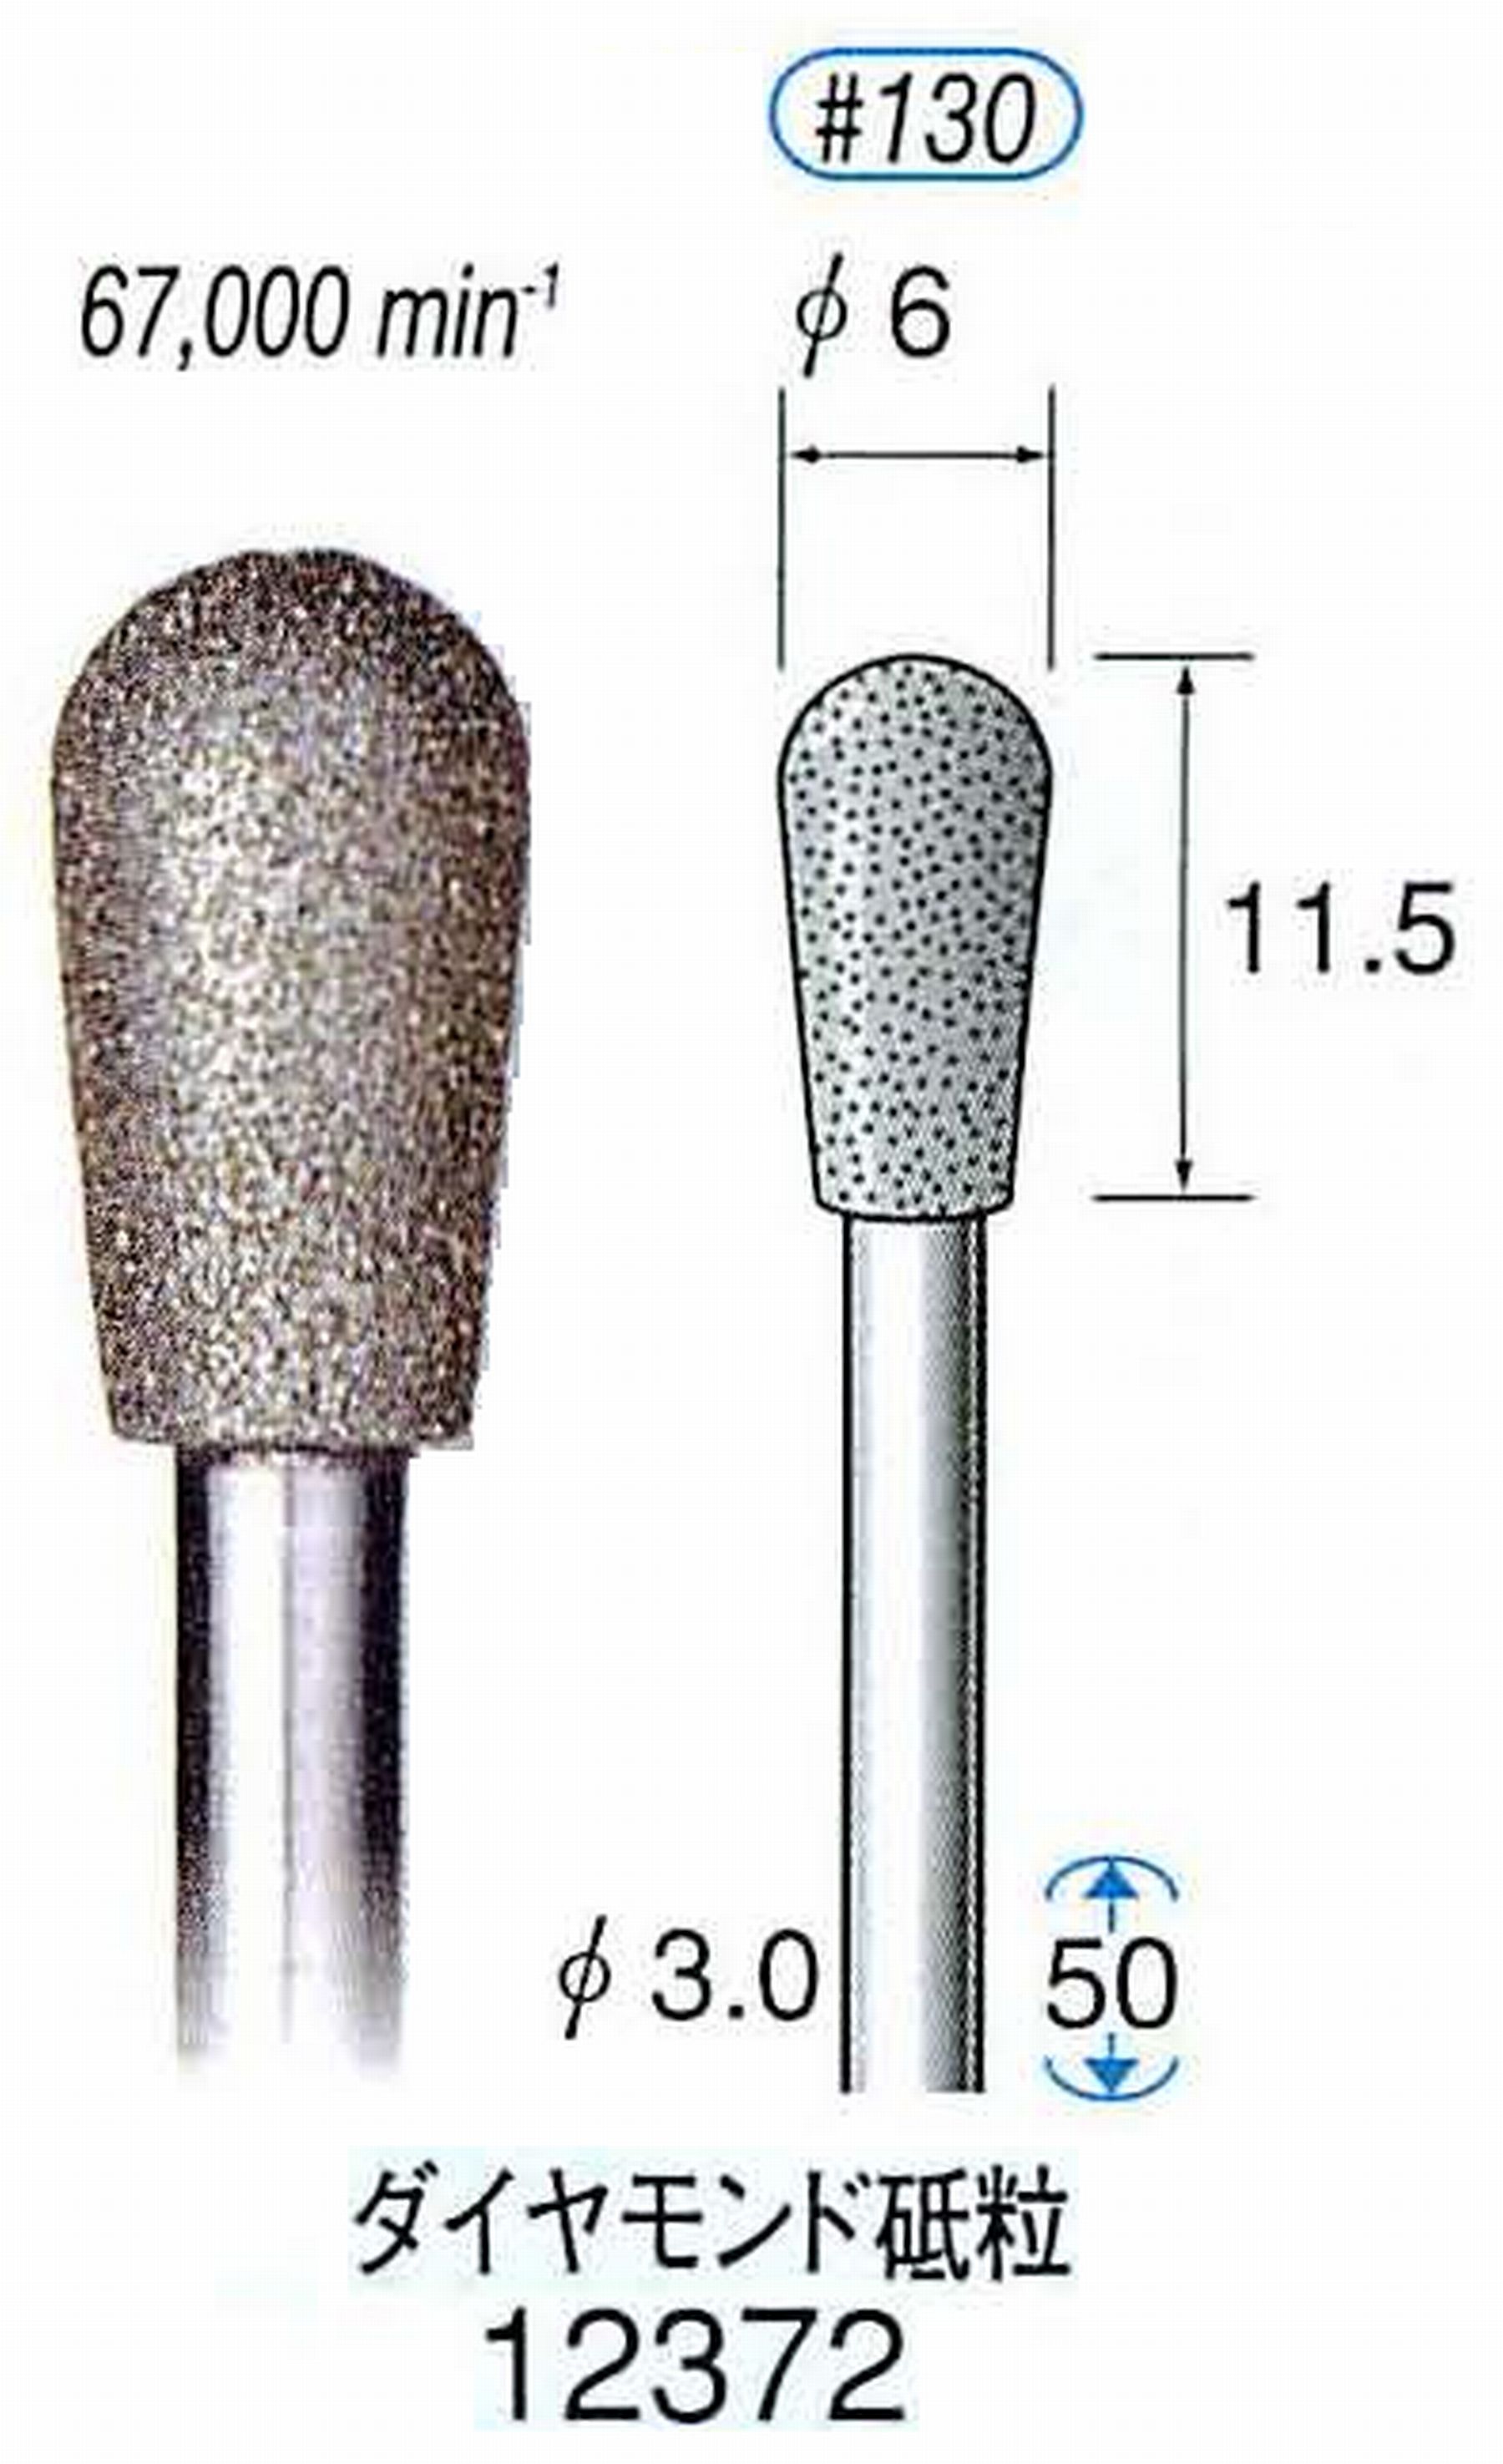 ナカニシ/NAKANISHI 電着ダイヤモンド ダイヤモンド砥粒 軸径(シャンク)φ3.0mm 12372